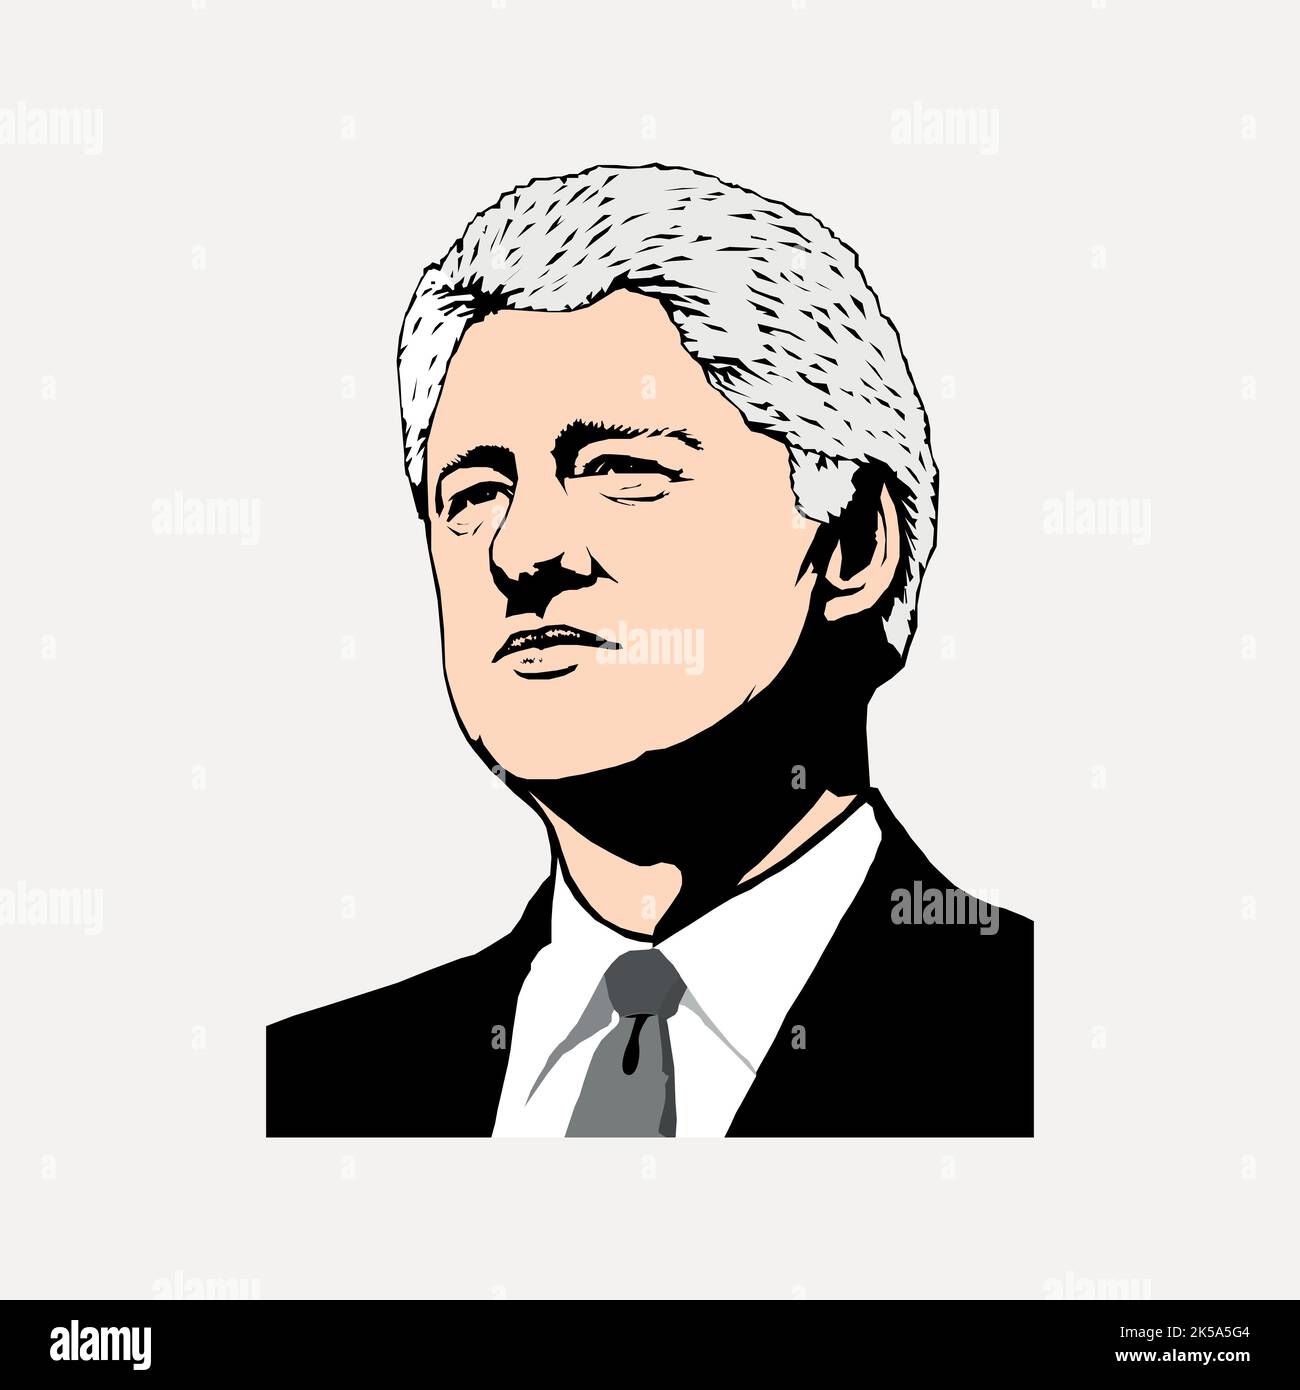 Bill Clinton clipart, US president portrait illustration vector. Stock Vector